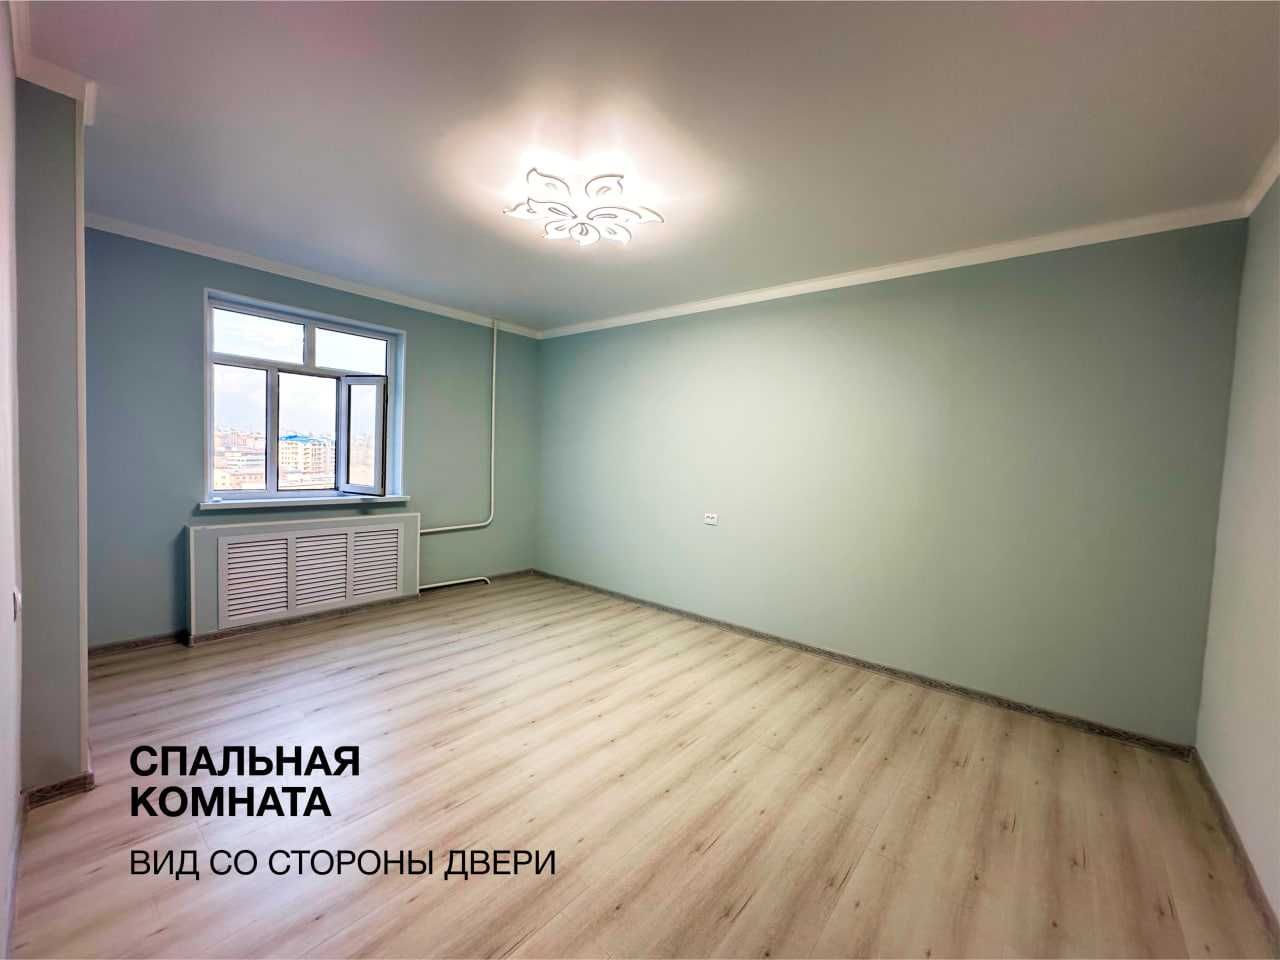 СРОЧНО! 3 комнатная 92м с новым ЕВРО ремонтом, локация - ул.Бабура